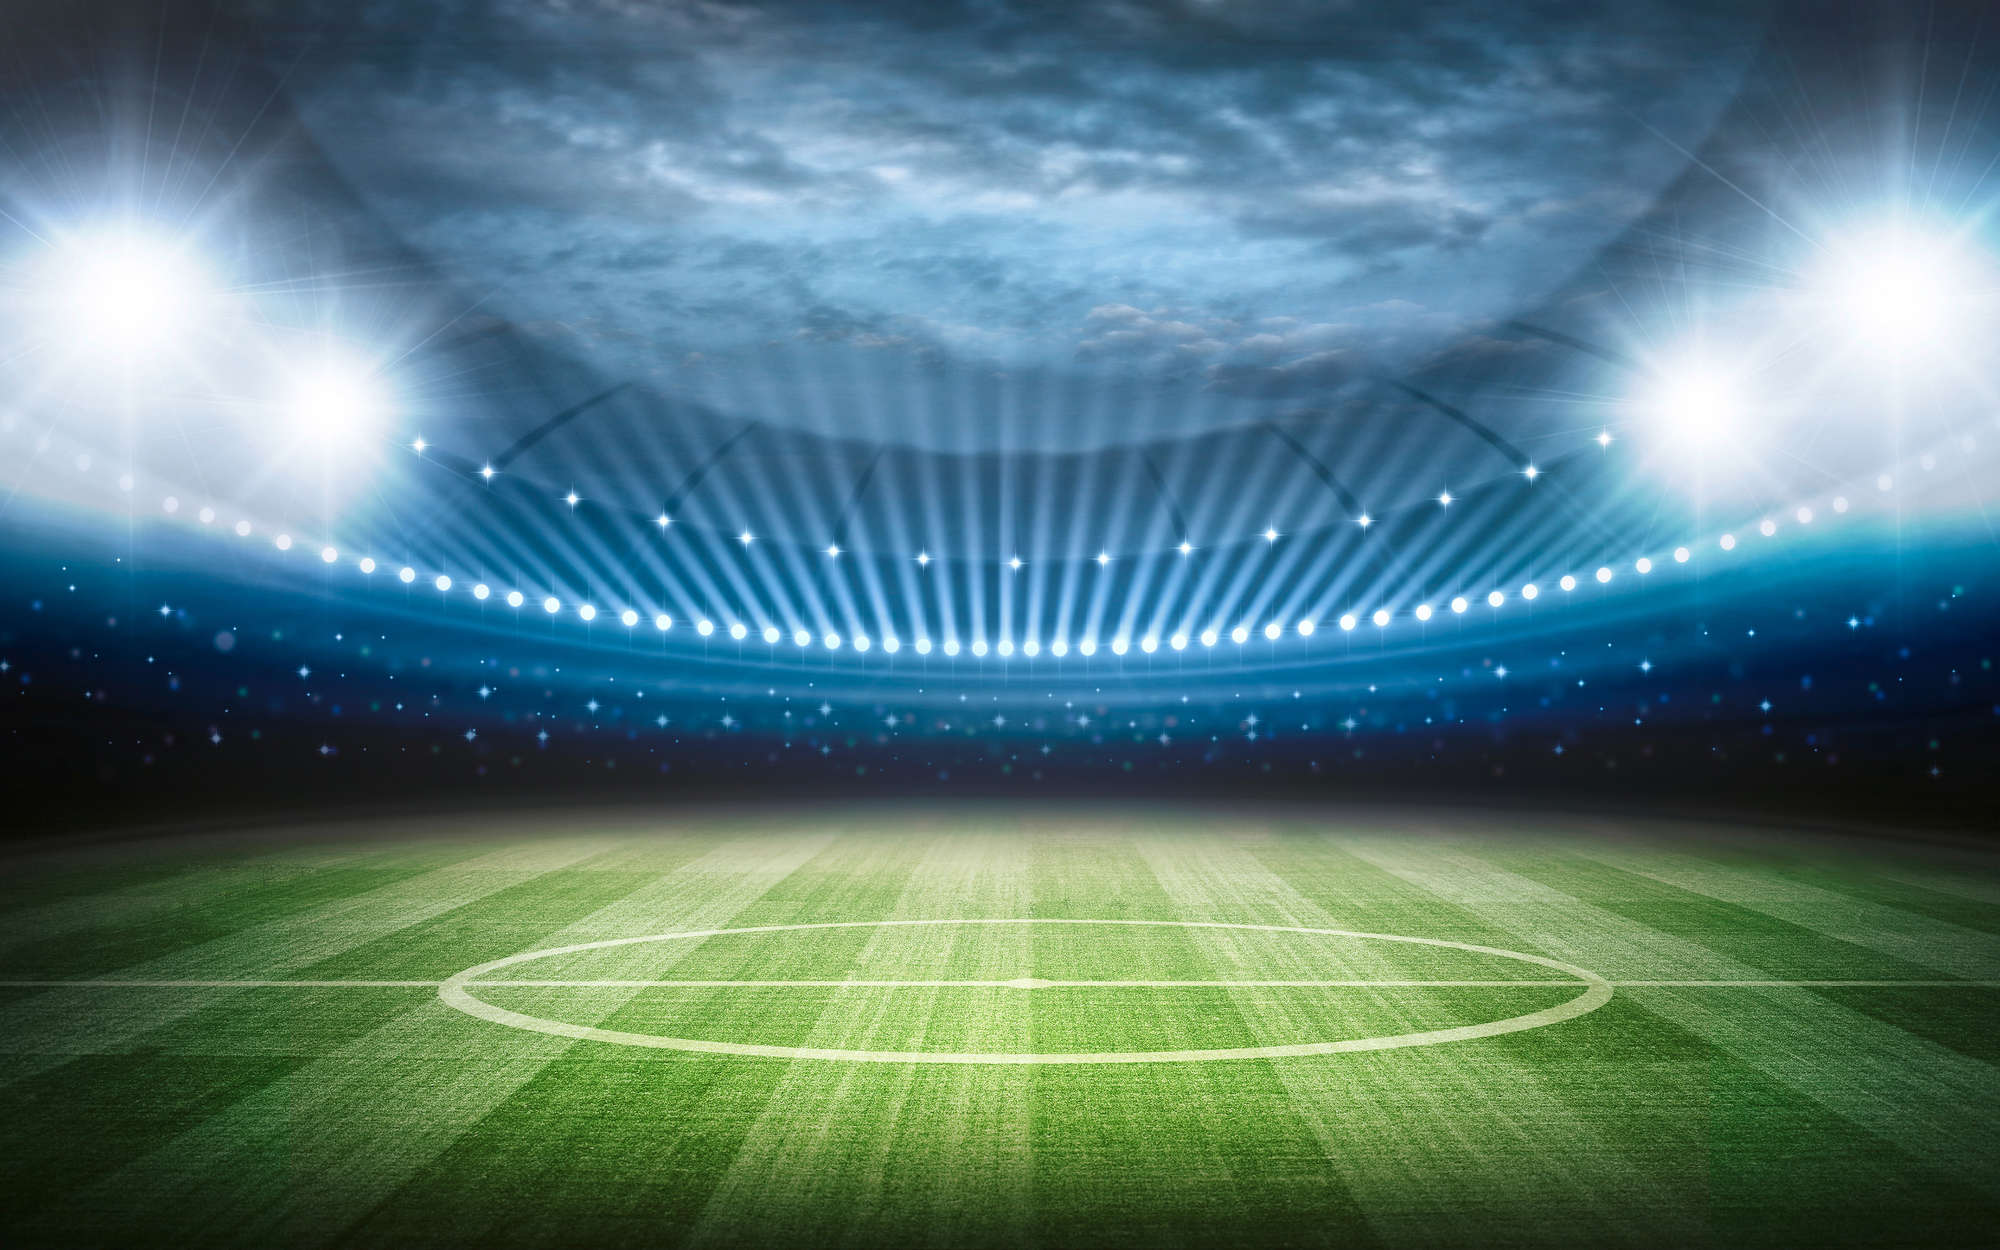             Fußball Fototapete Stadion mit Flutlicht – Perlmutt Glattvlies
        